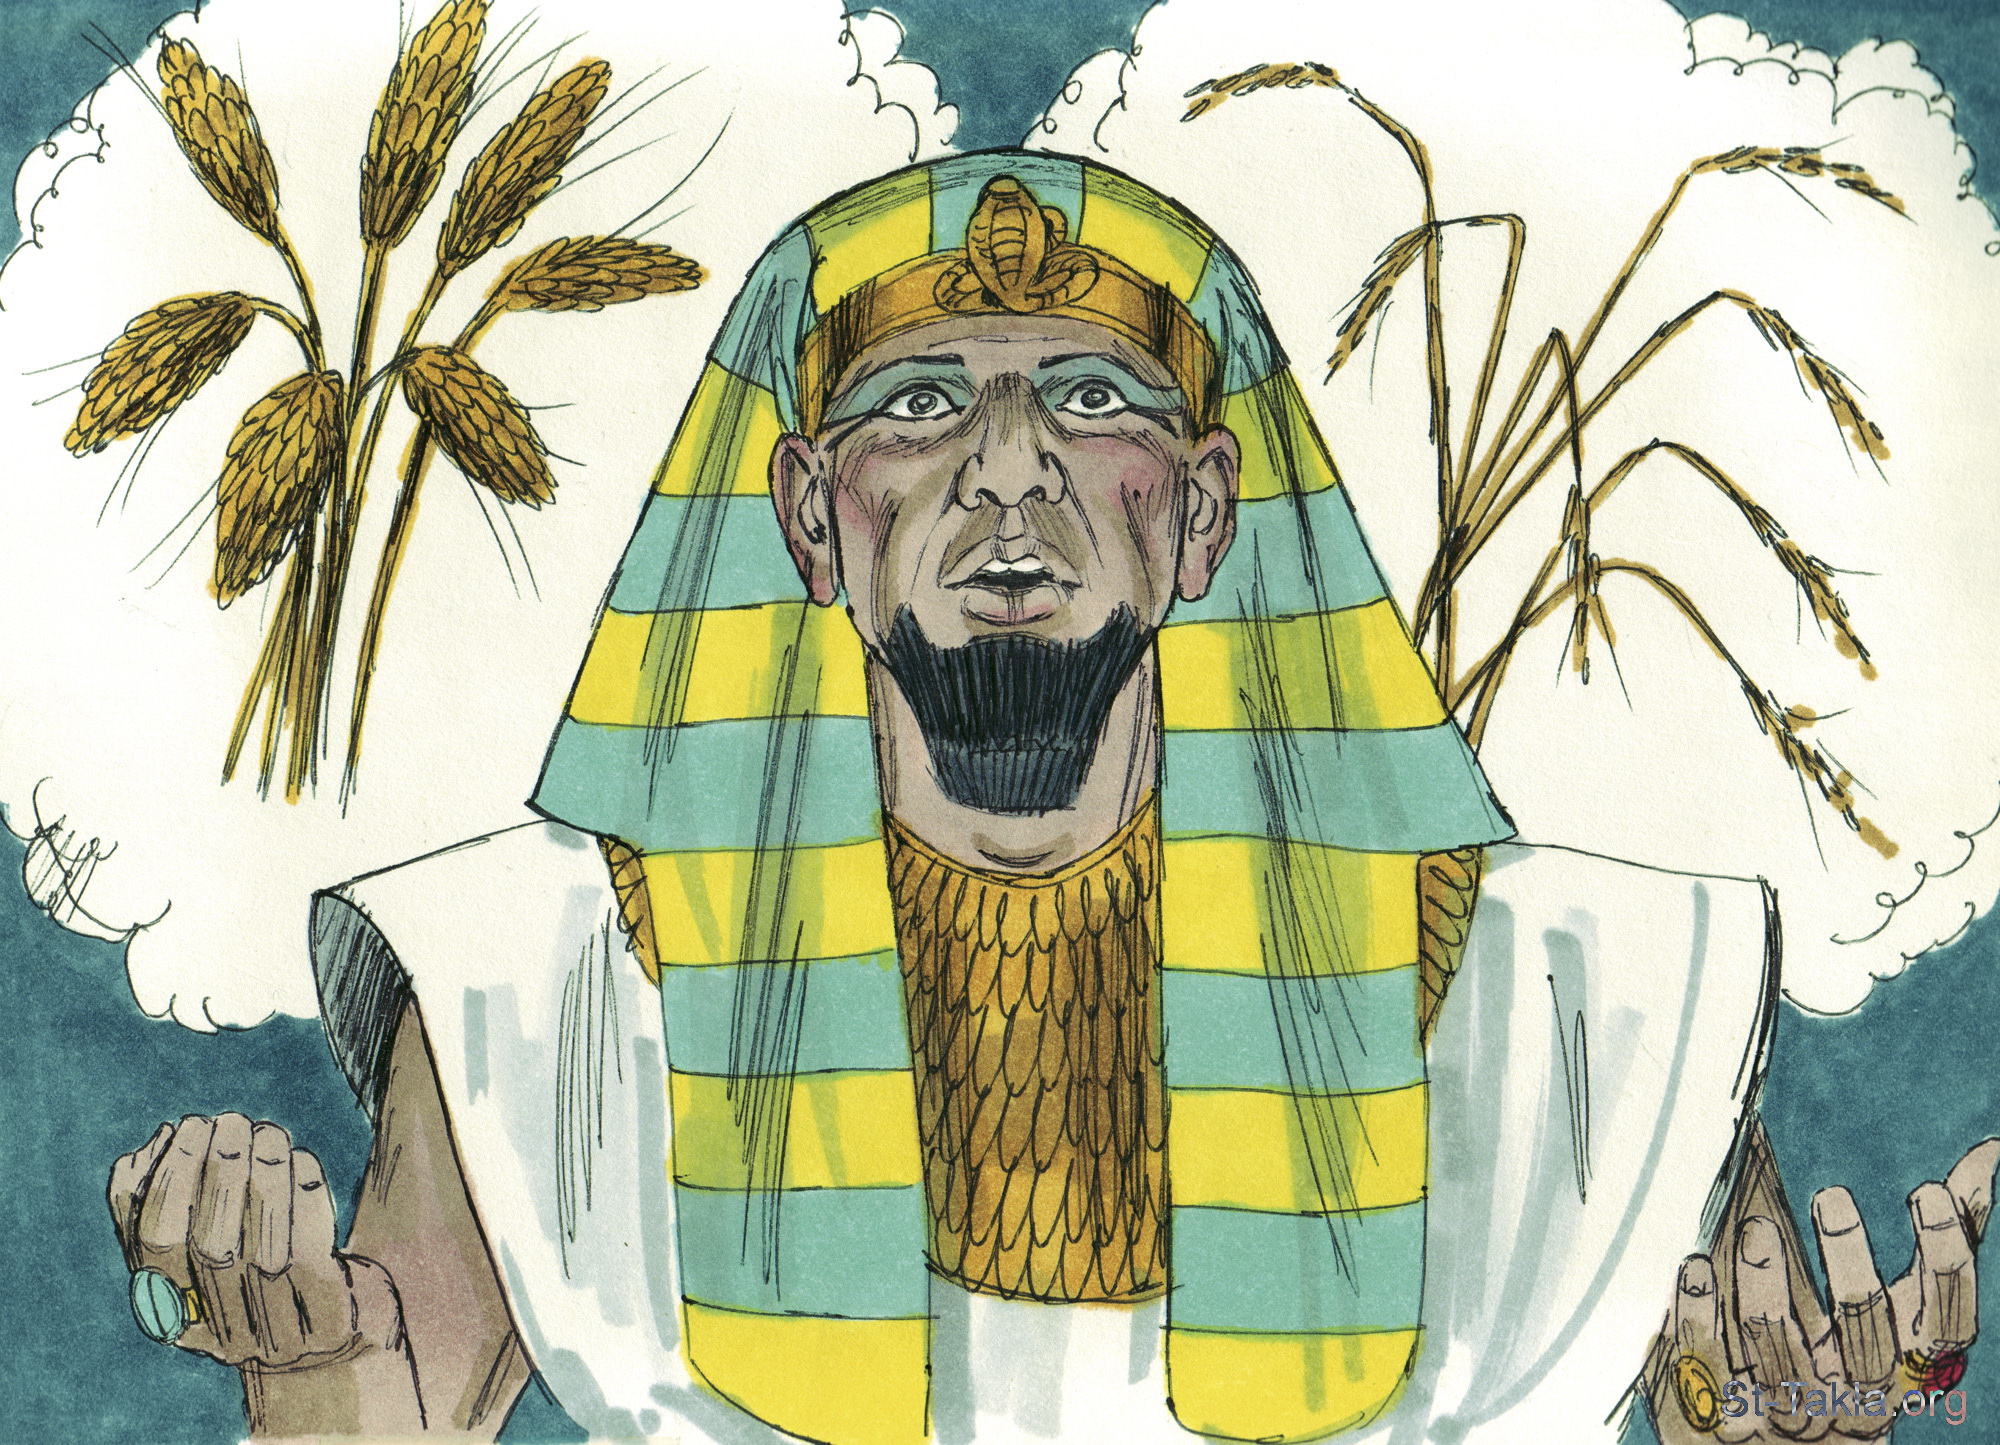 Иосиф и сны фараона